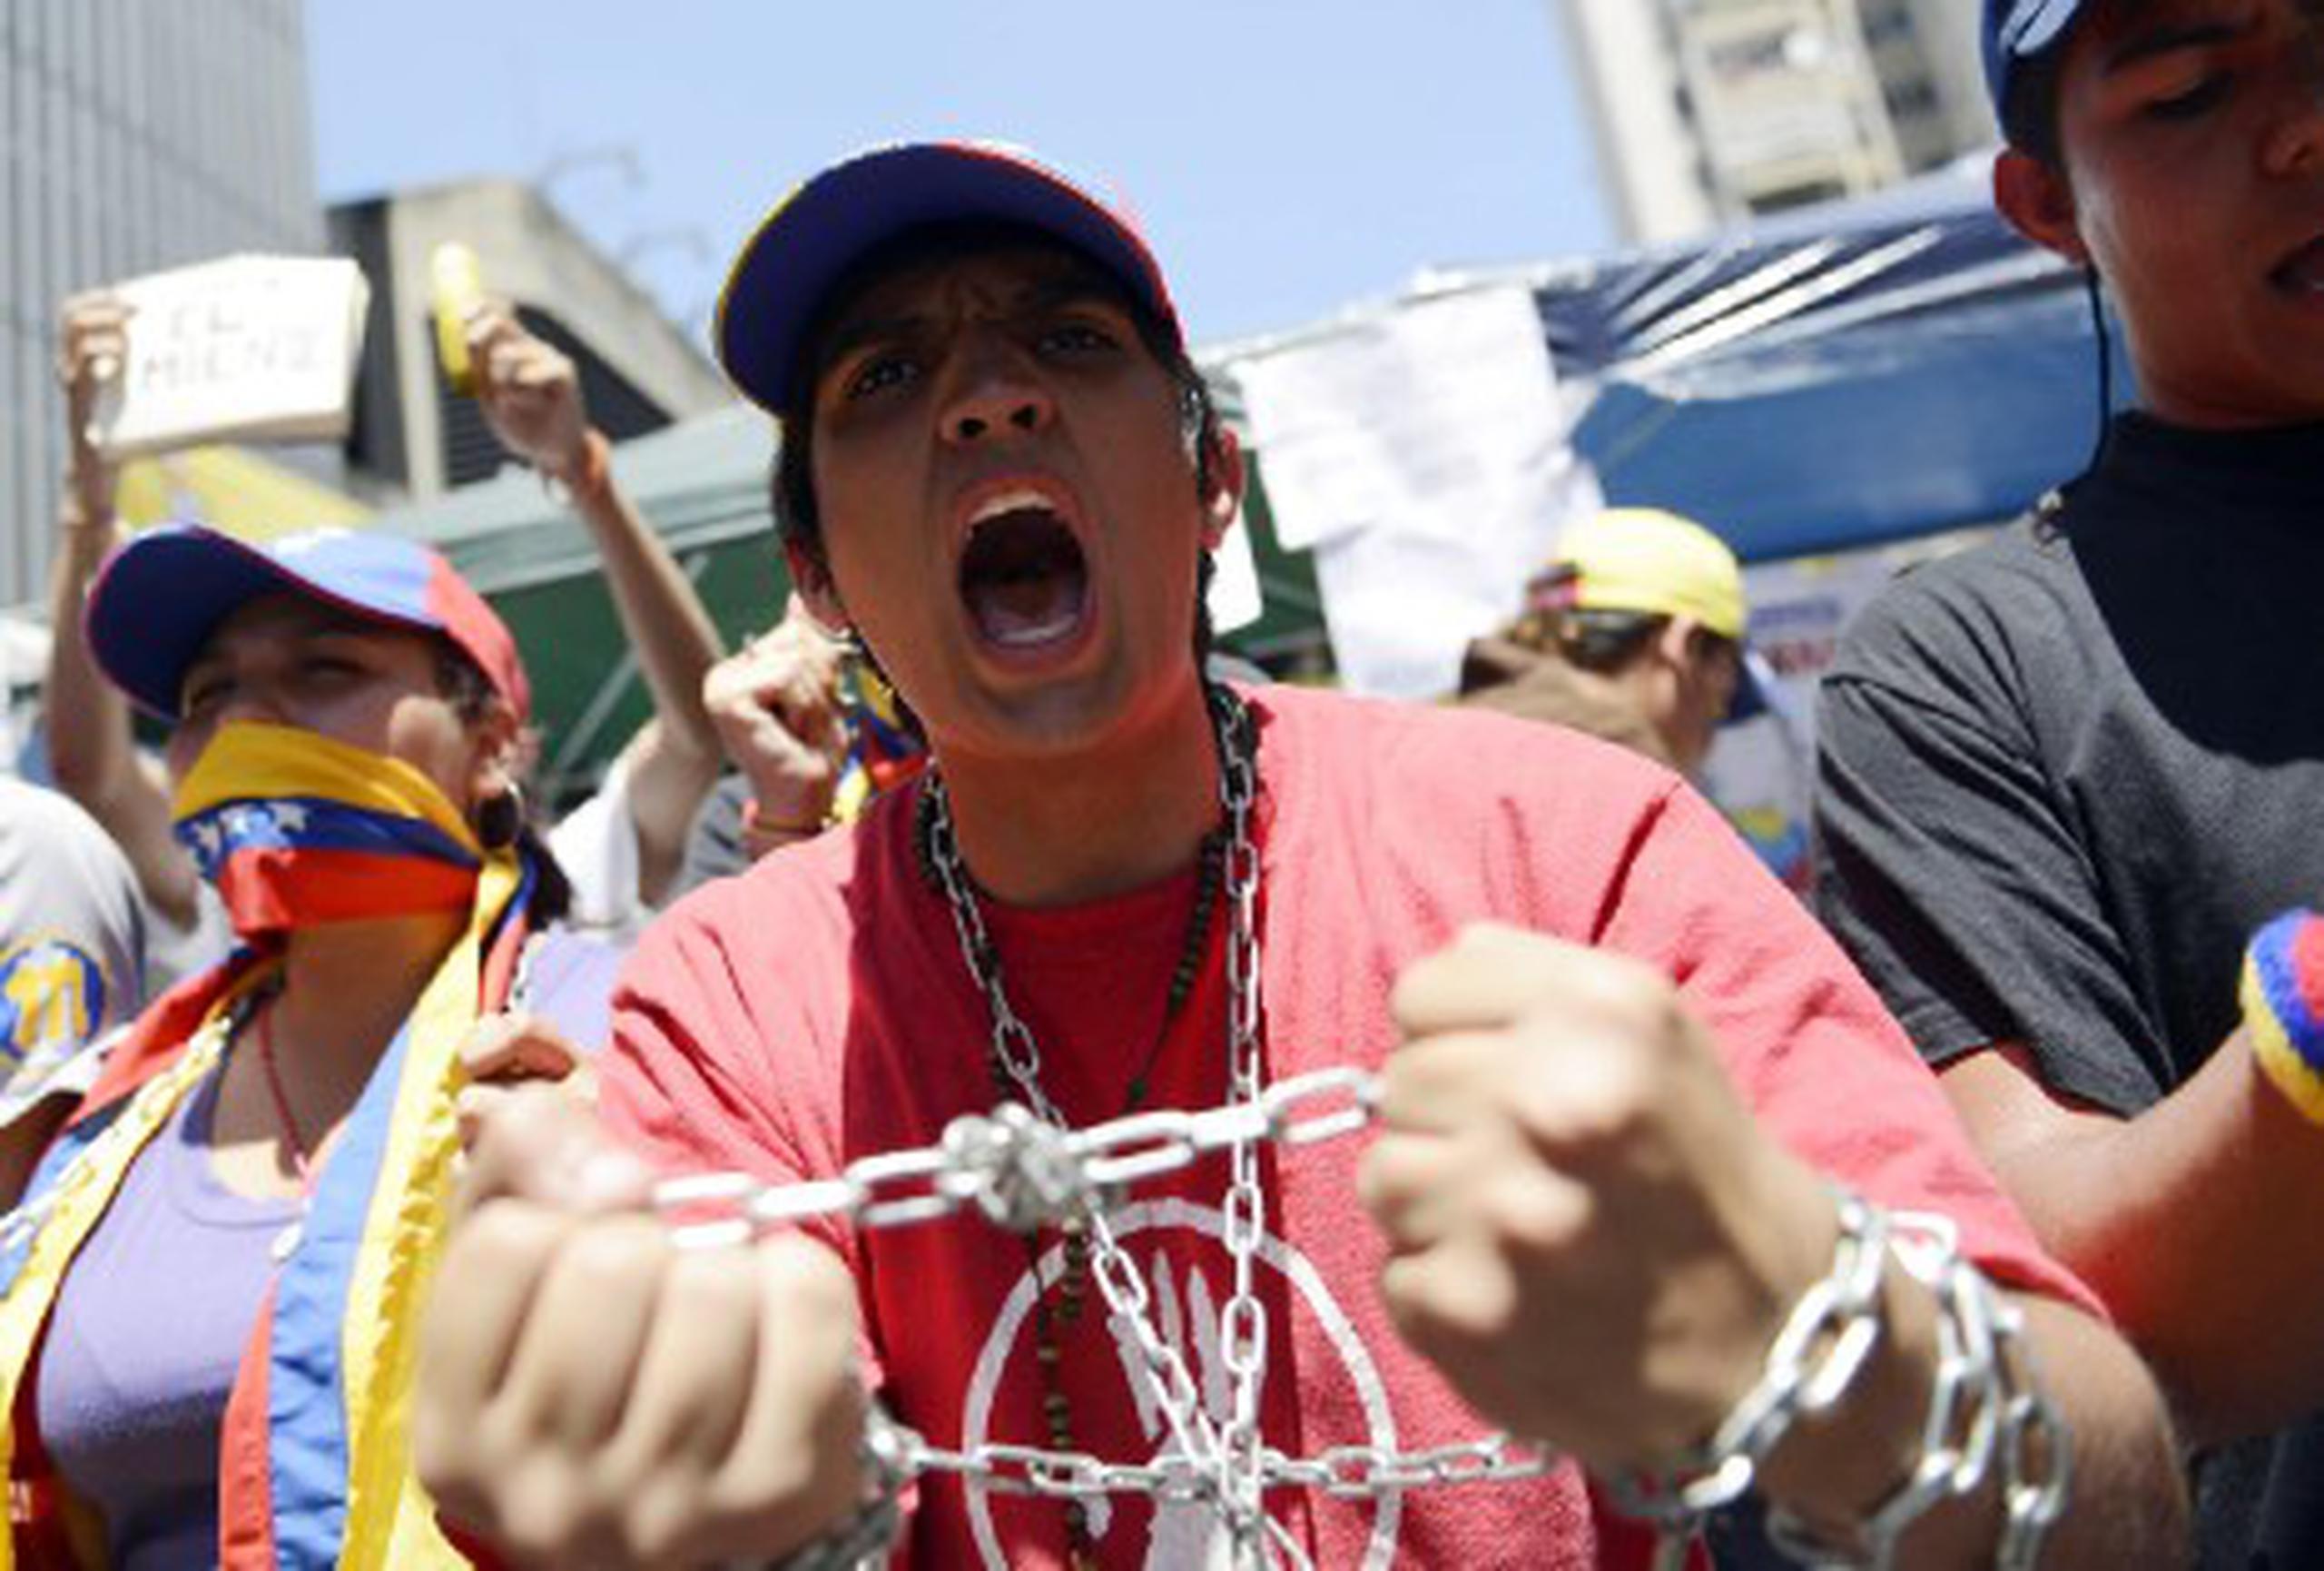 La protesta fue convocada al día siguiente de que el vicepresidente Nicolás Maduro dijo que Chávez estaba recibiendo quimioterapia mientras se reponía de una infección respiratoria grave. (AFP)